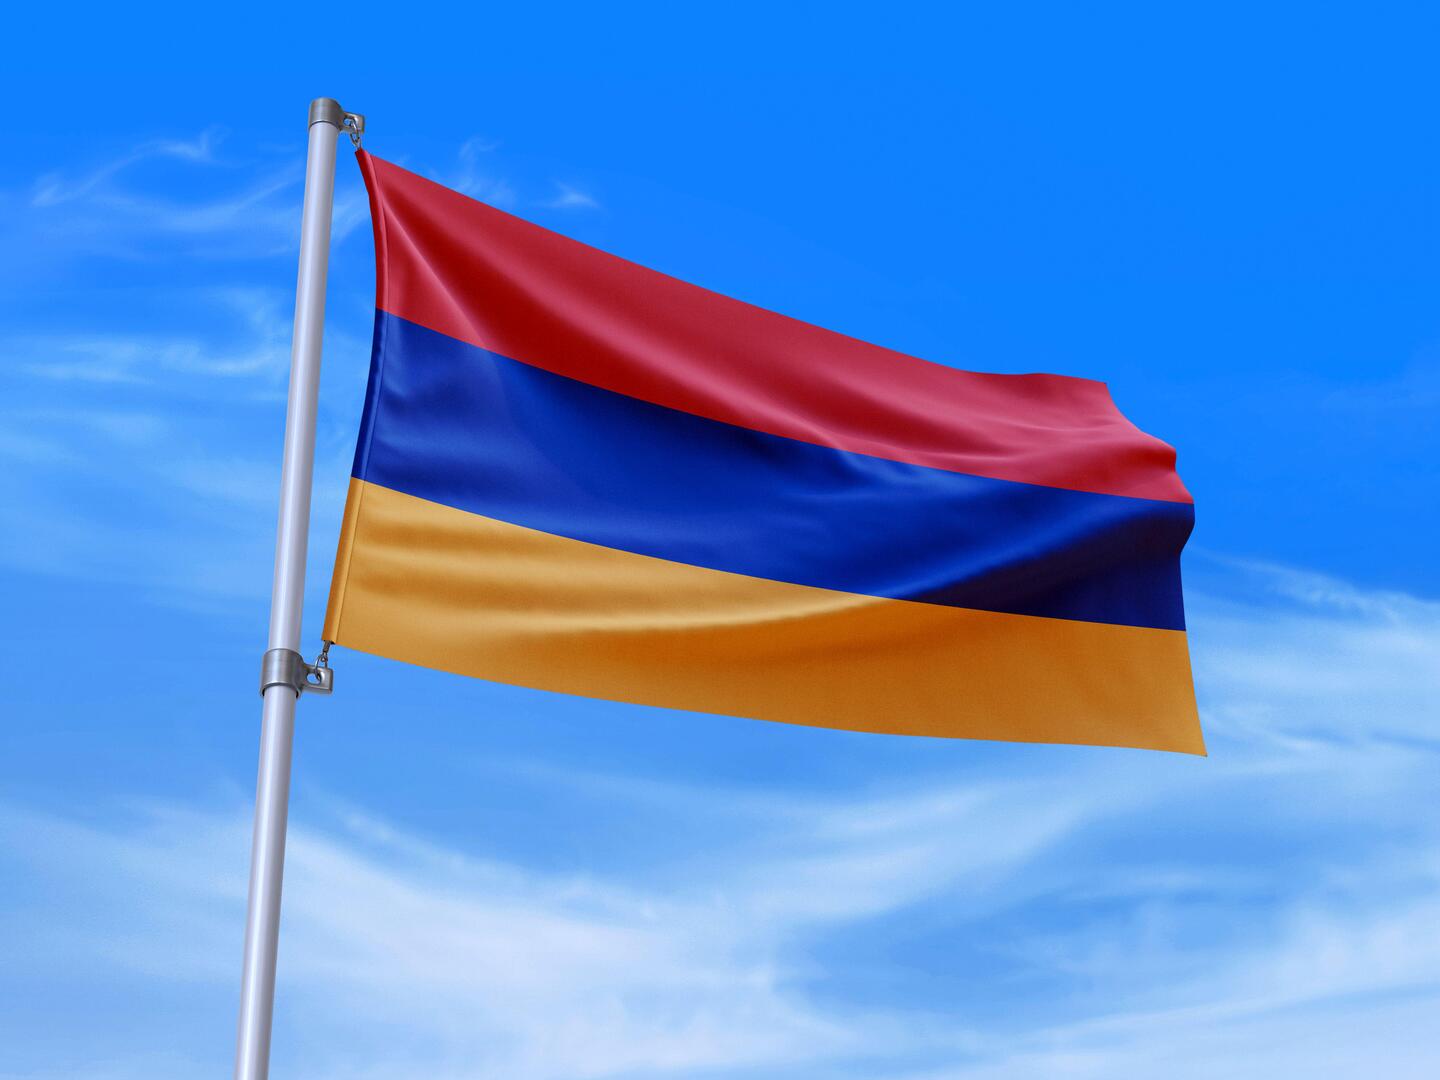 أرمينيا: علييف يهدد الأرمن بالتطهير العرقي في قره باغ